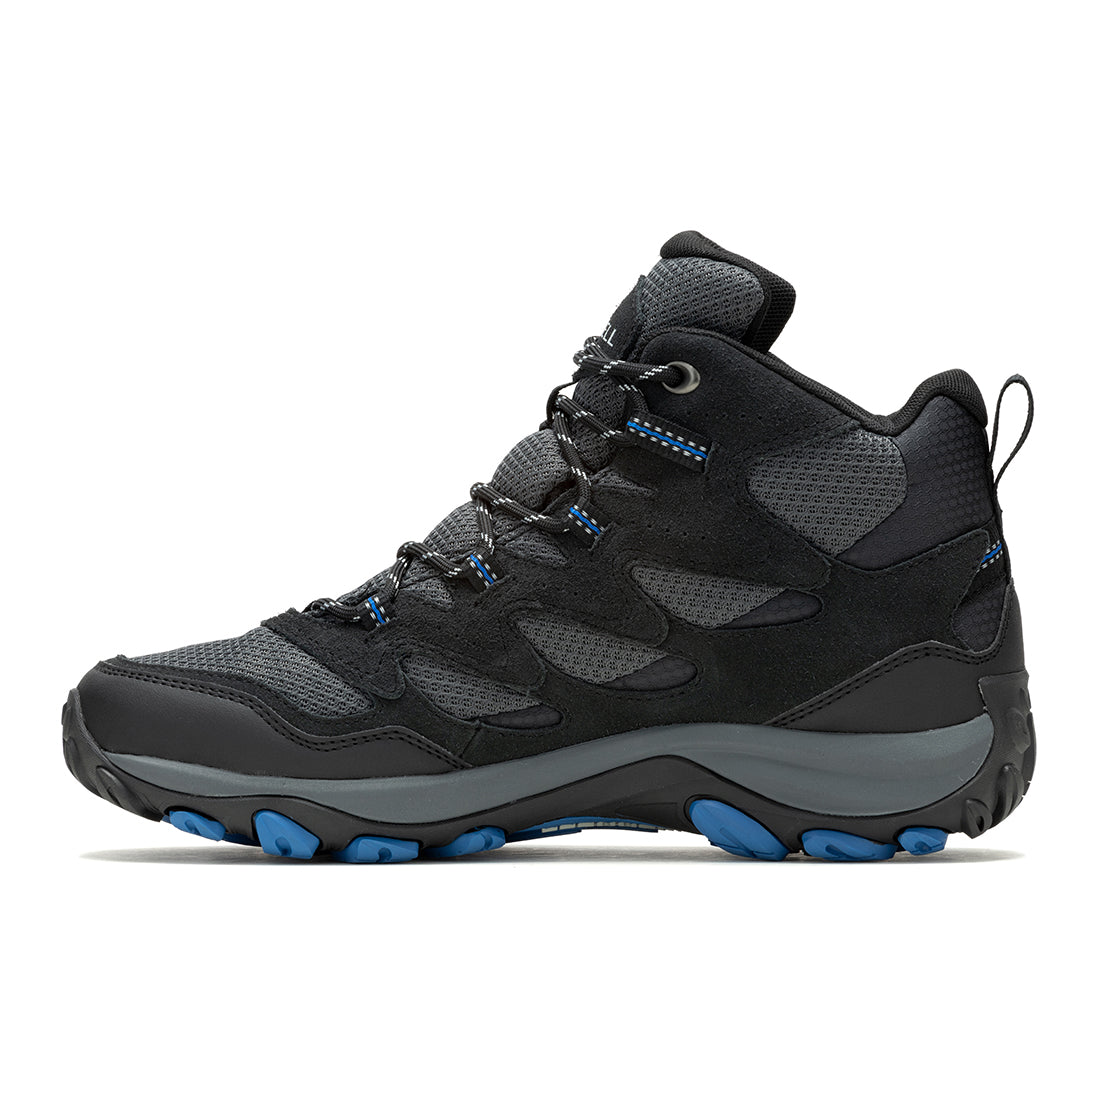 West Rim Mid Waterproof -Black/Blue Mens Hiking Shoes